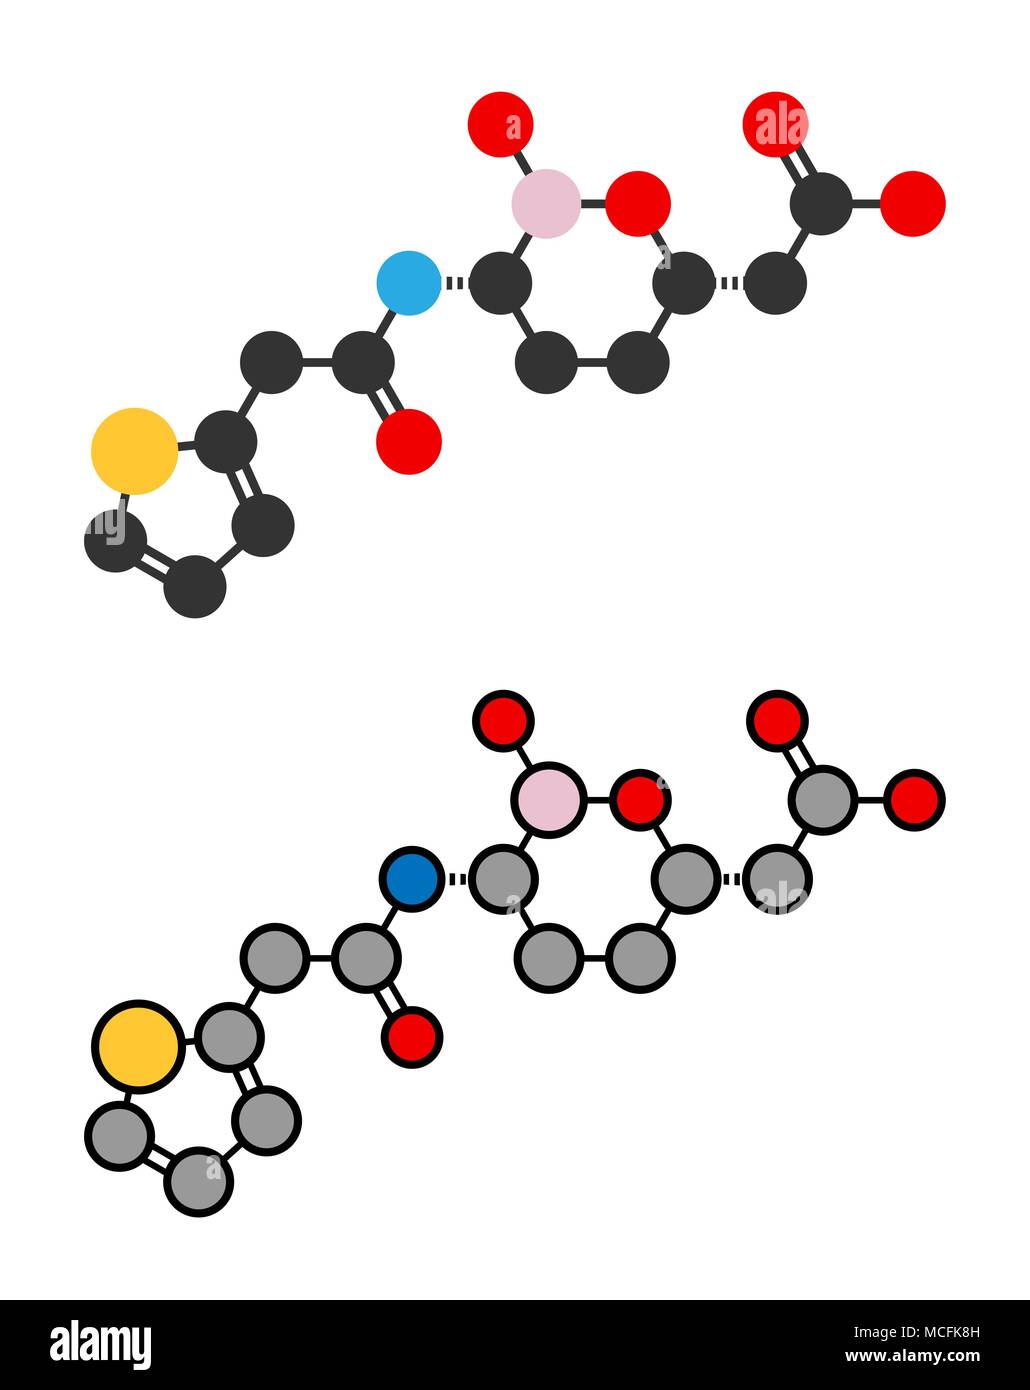 Vaborbactam molécule pharmaceutique. Les bêta-lactamases co-administré avec le méropenem pour bloquer la dégradation de ce dernier par carbapenemase enzymes. Styliz Illustration de Vecteur